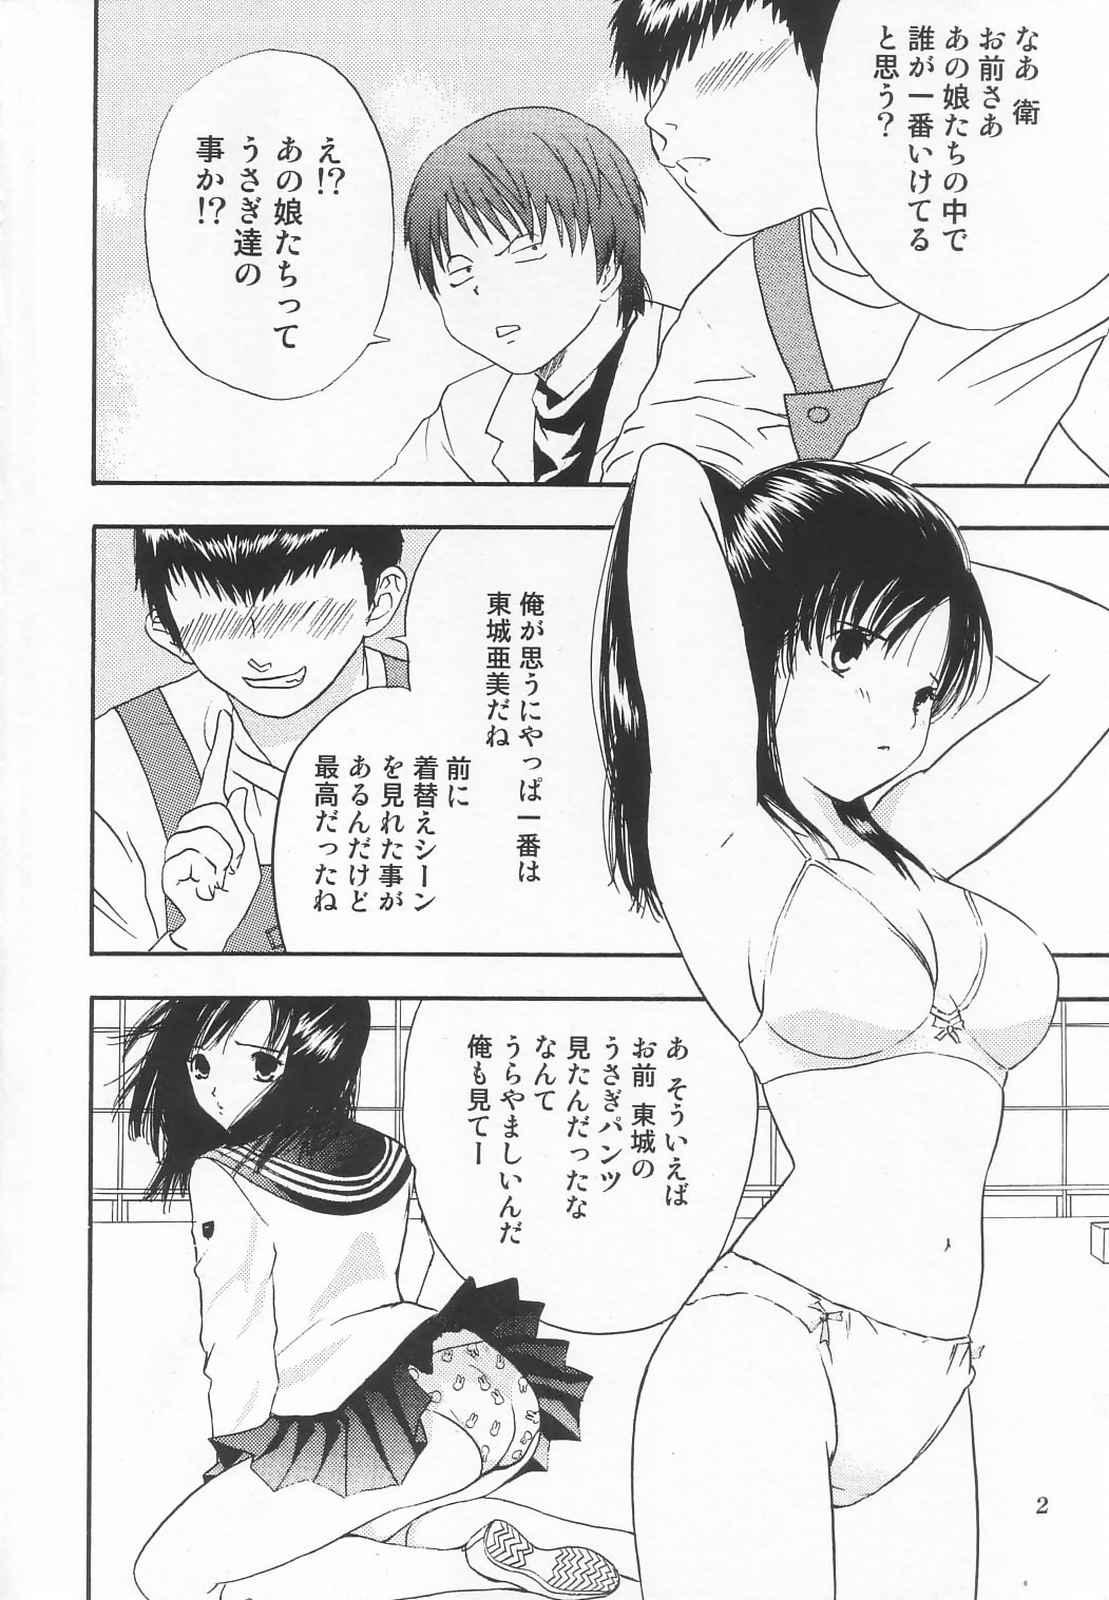 Amiga Tokusatsu Magazine x 2003 Fuyu Gou - Sailor moon Ichigo 100 Public Sex - Page 4